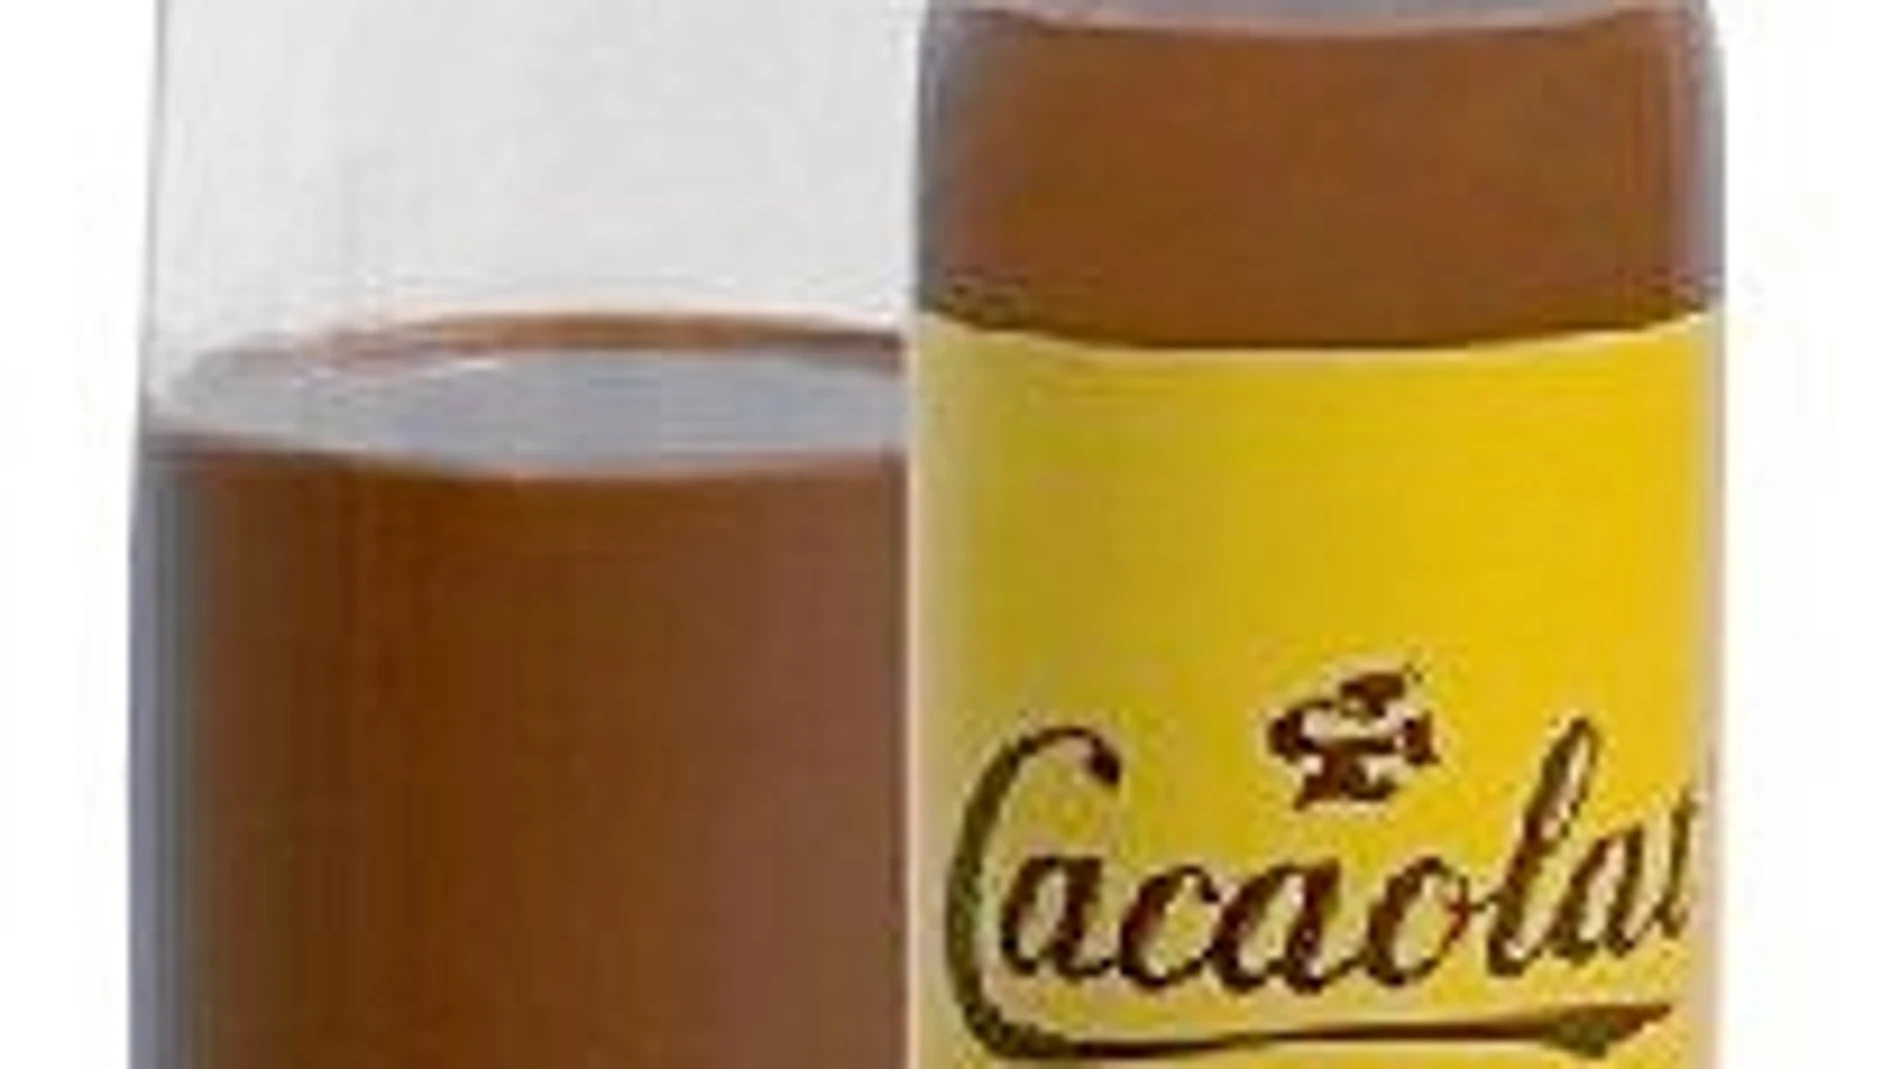 El calorímetro: Un vaso de Cacaolat